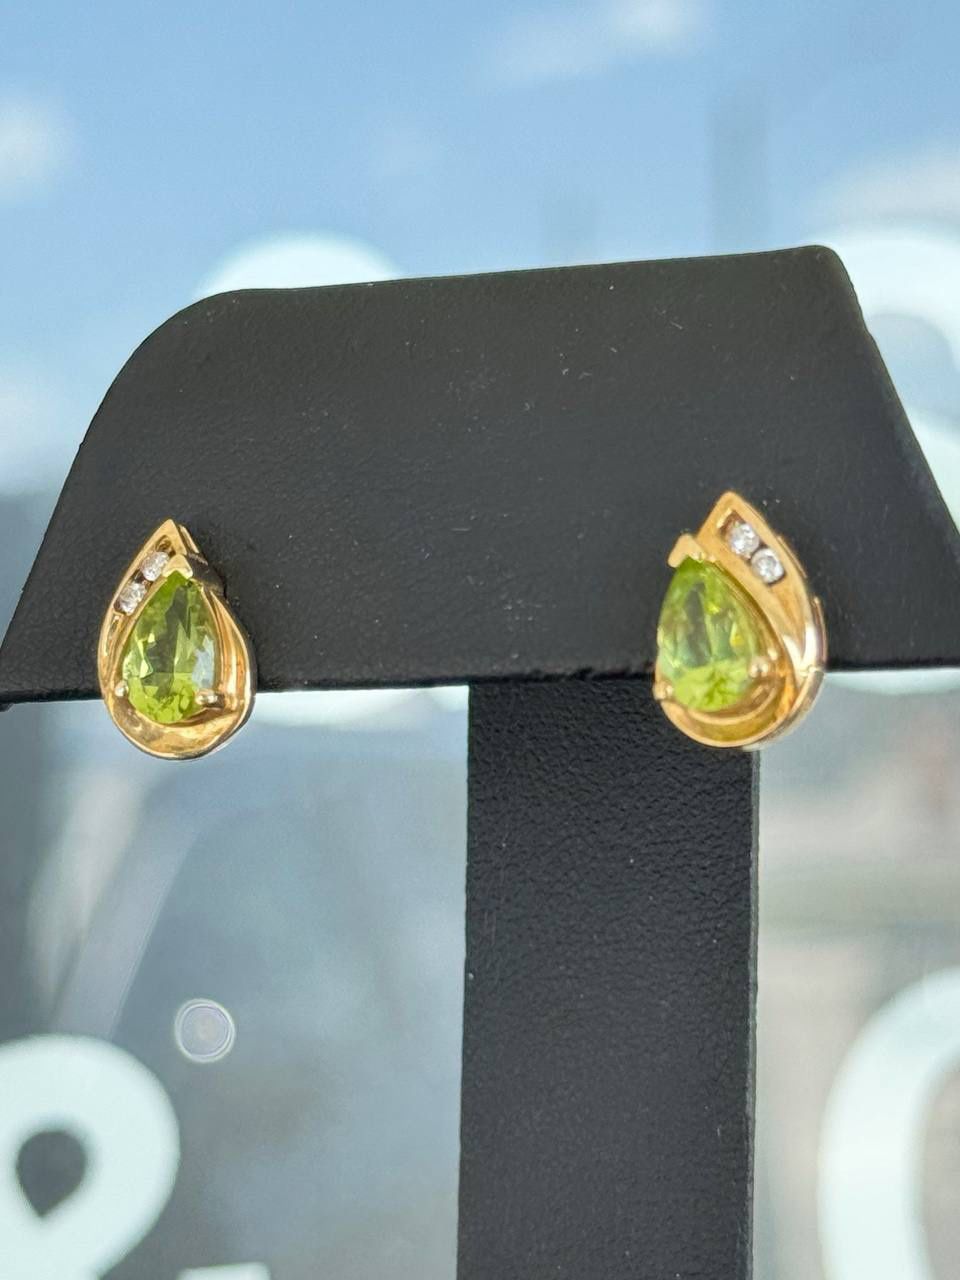 10k yellow Gold Peridot and Diamond Earrings studs